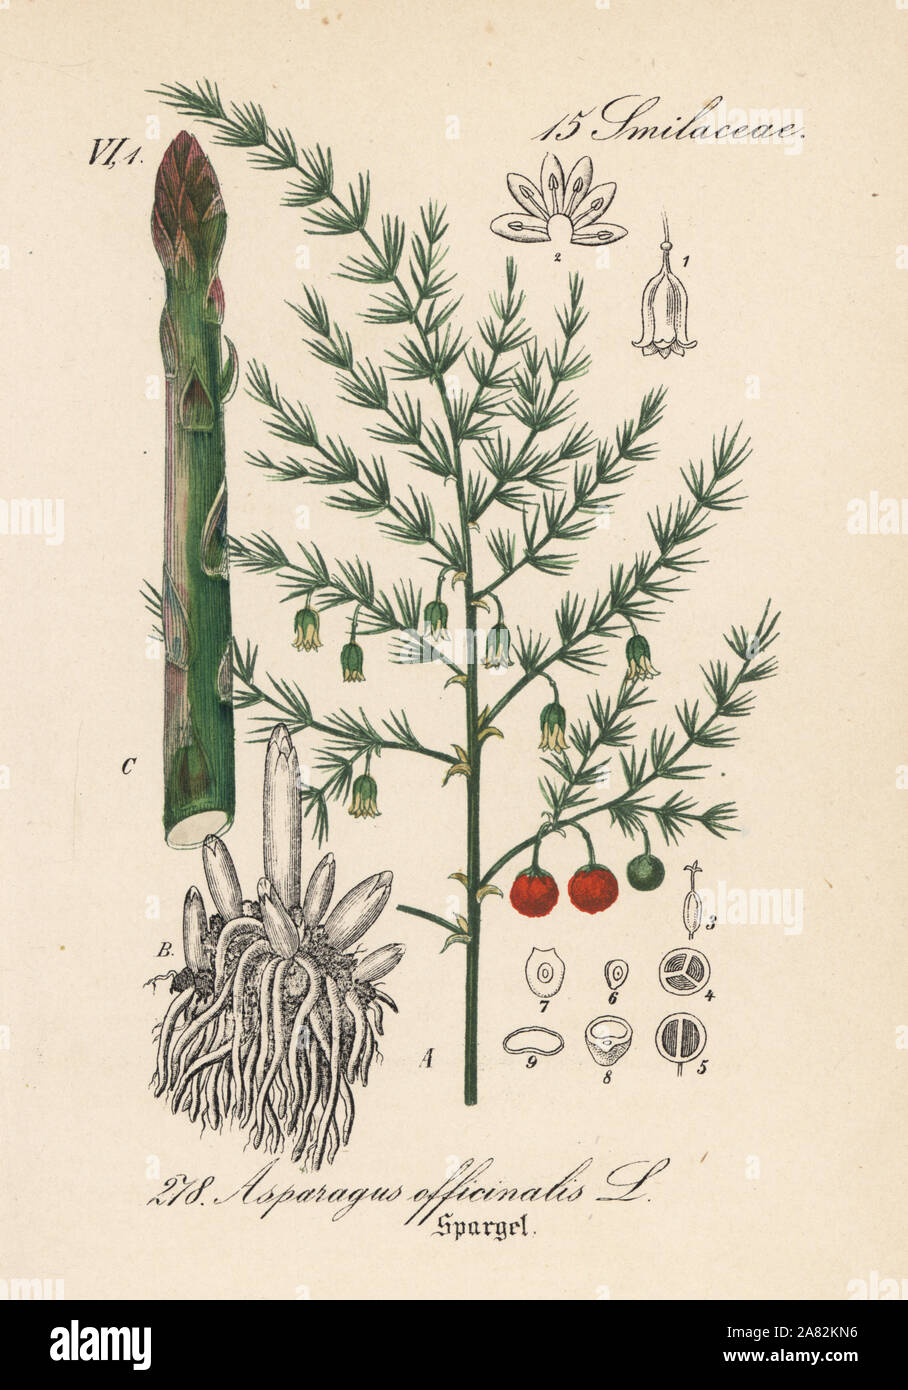 Spargel, Asparagus officinalis. Papierkörbe Lithographie von Diederich von Schlechtendal der Deutschen Flora (Flora von Deutschland), Jena, 1871. Stockfoto